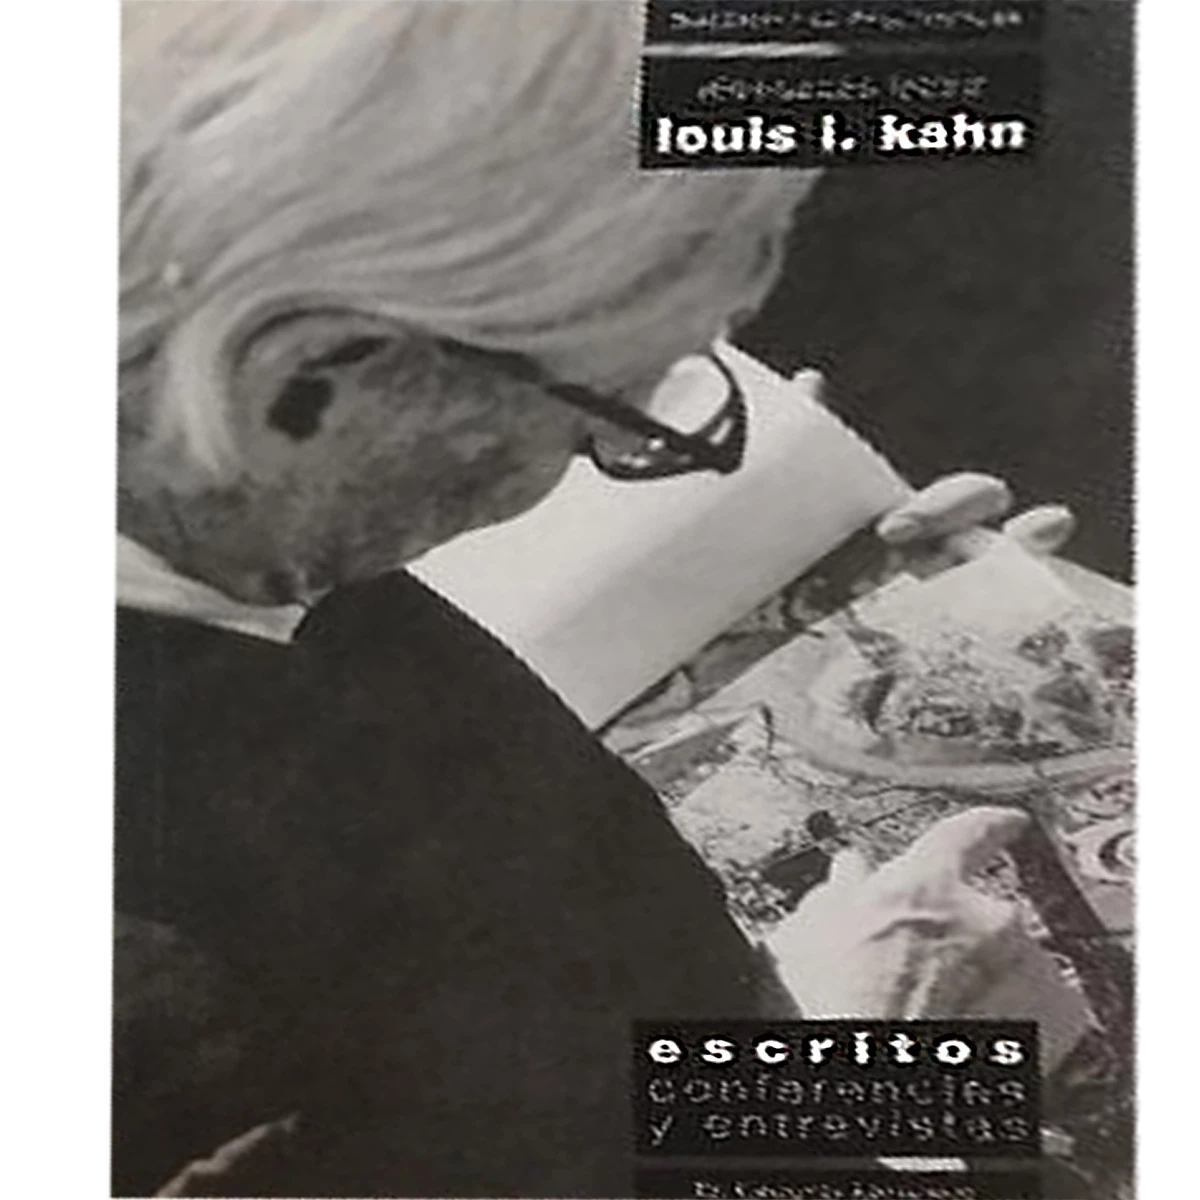 Louis I. Kahn: escritos, conferencias y entrevistas